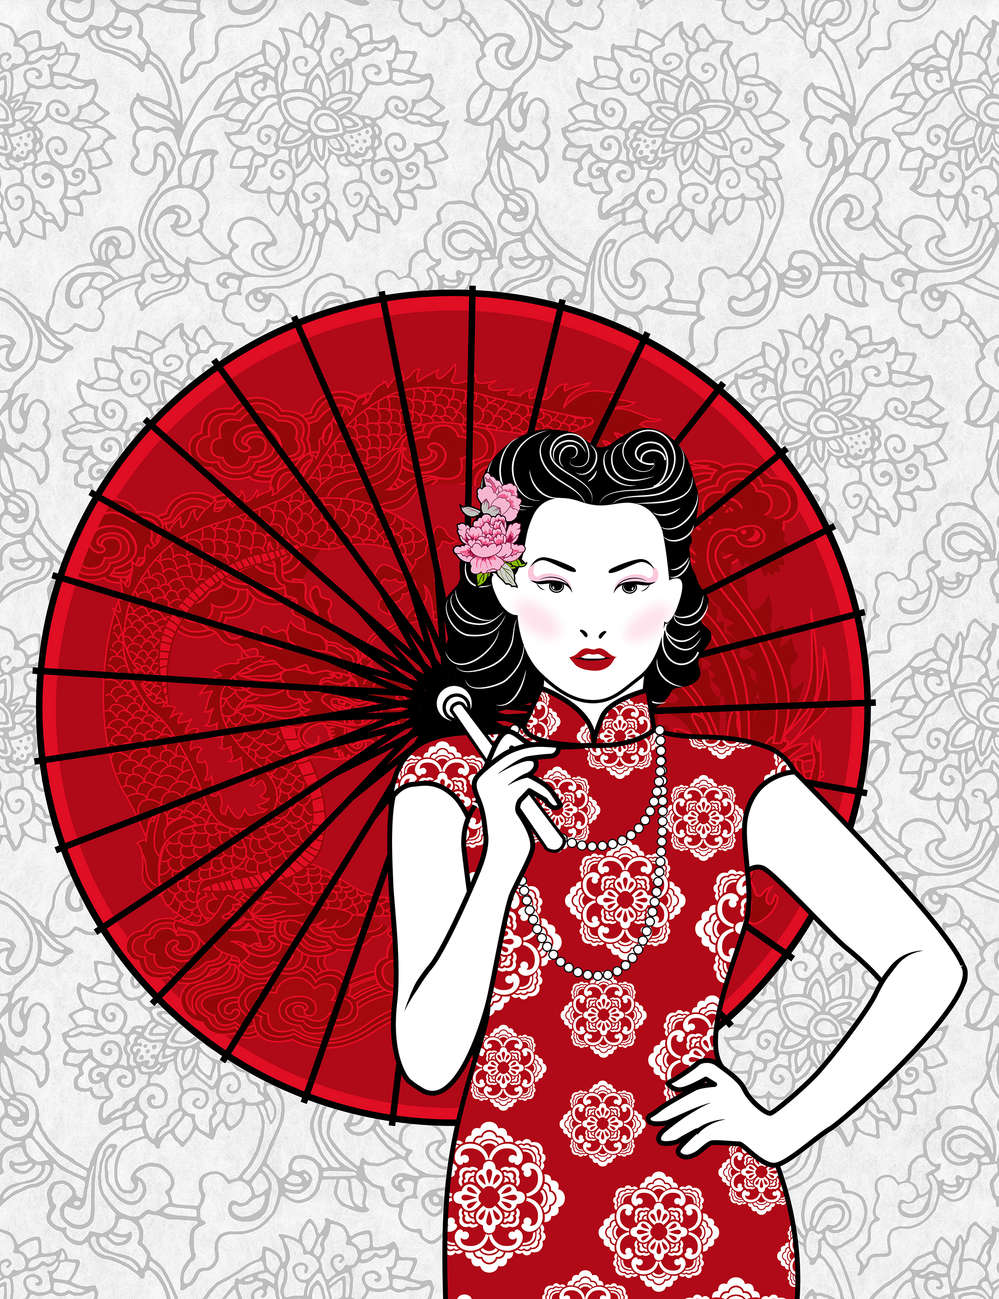             Photo wallpaper Woman with umbrella, Asian motif - Premium smooth non-woven
        